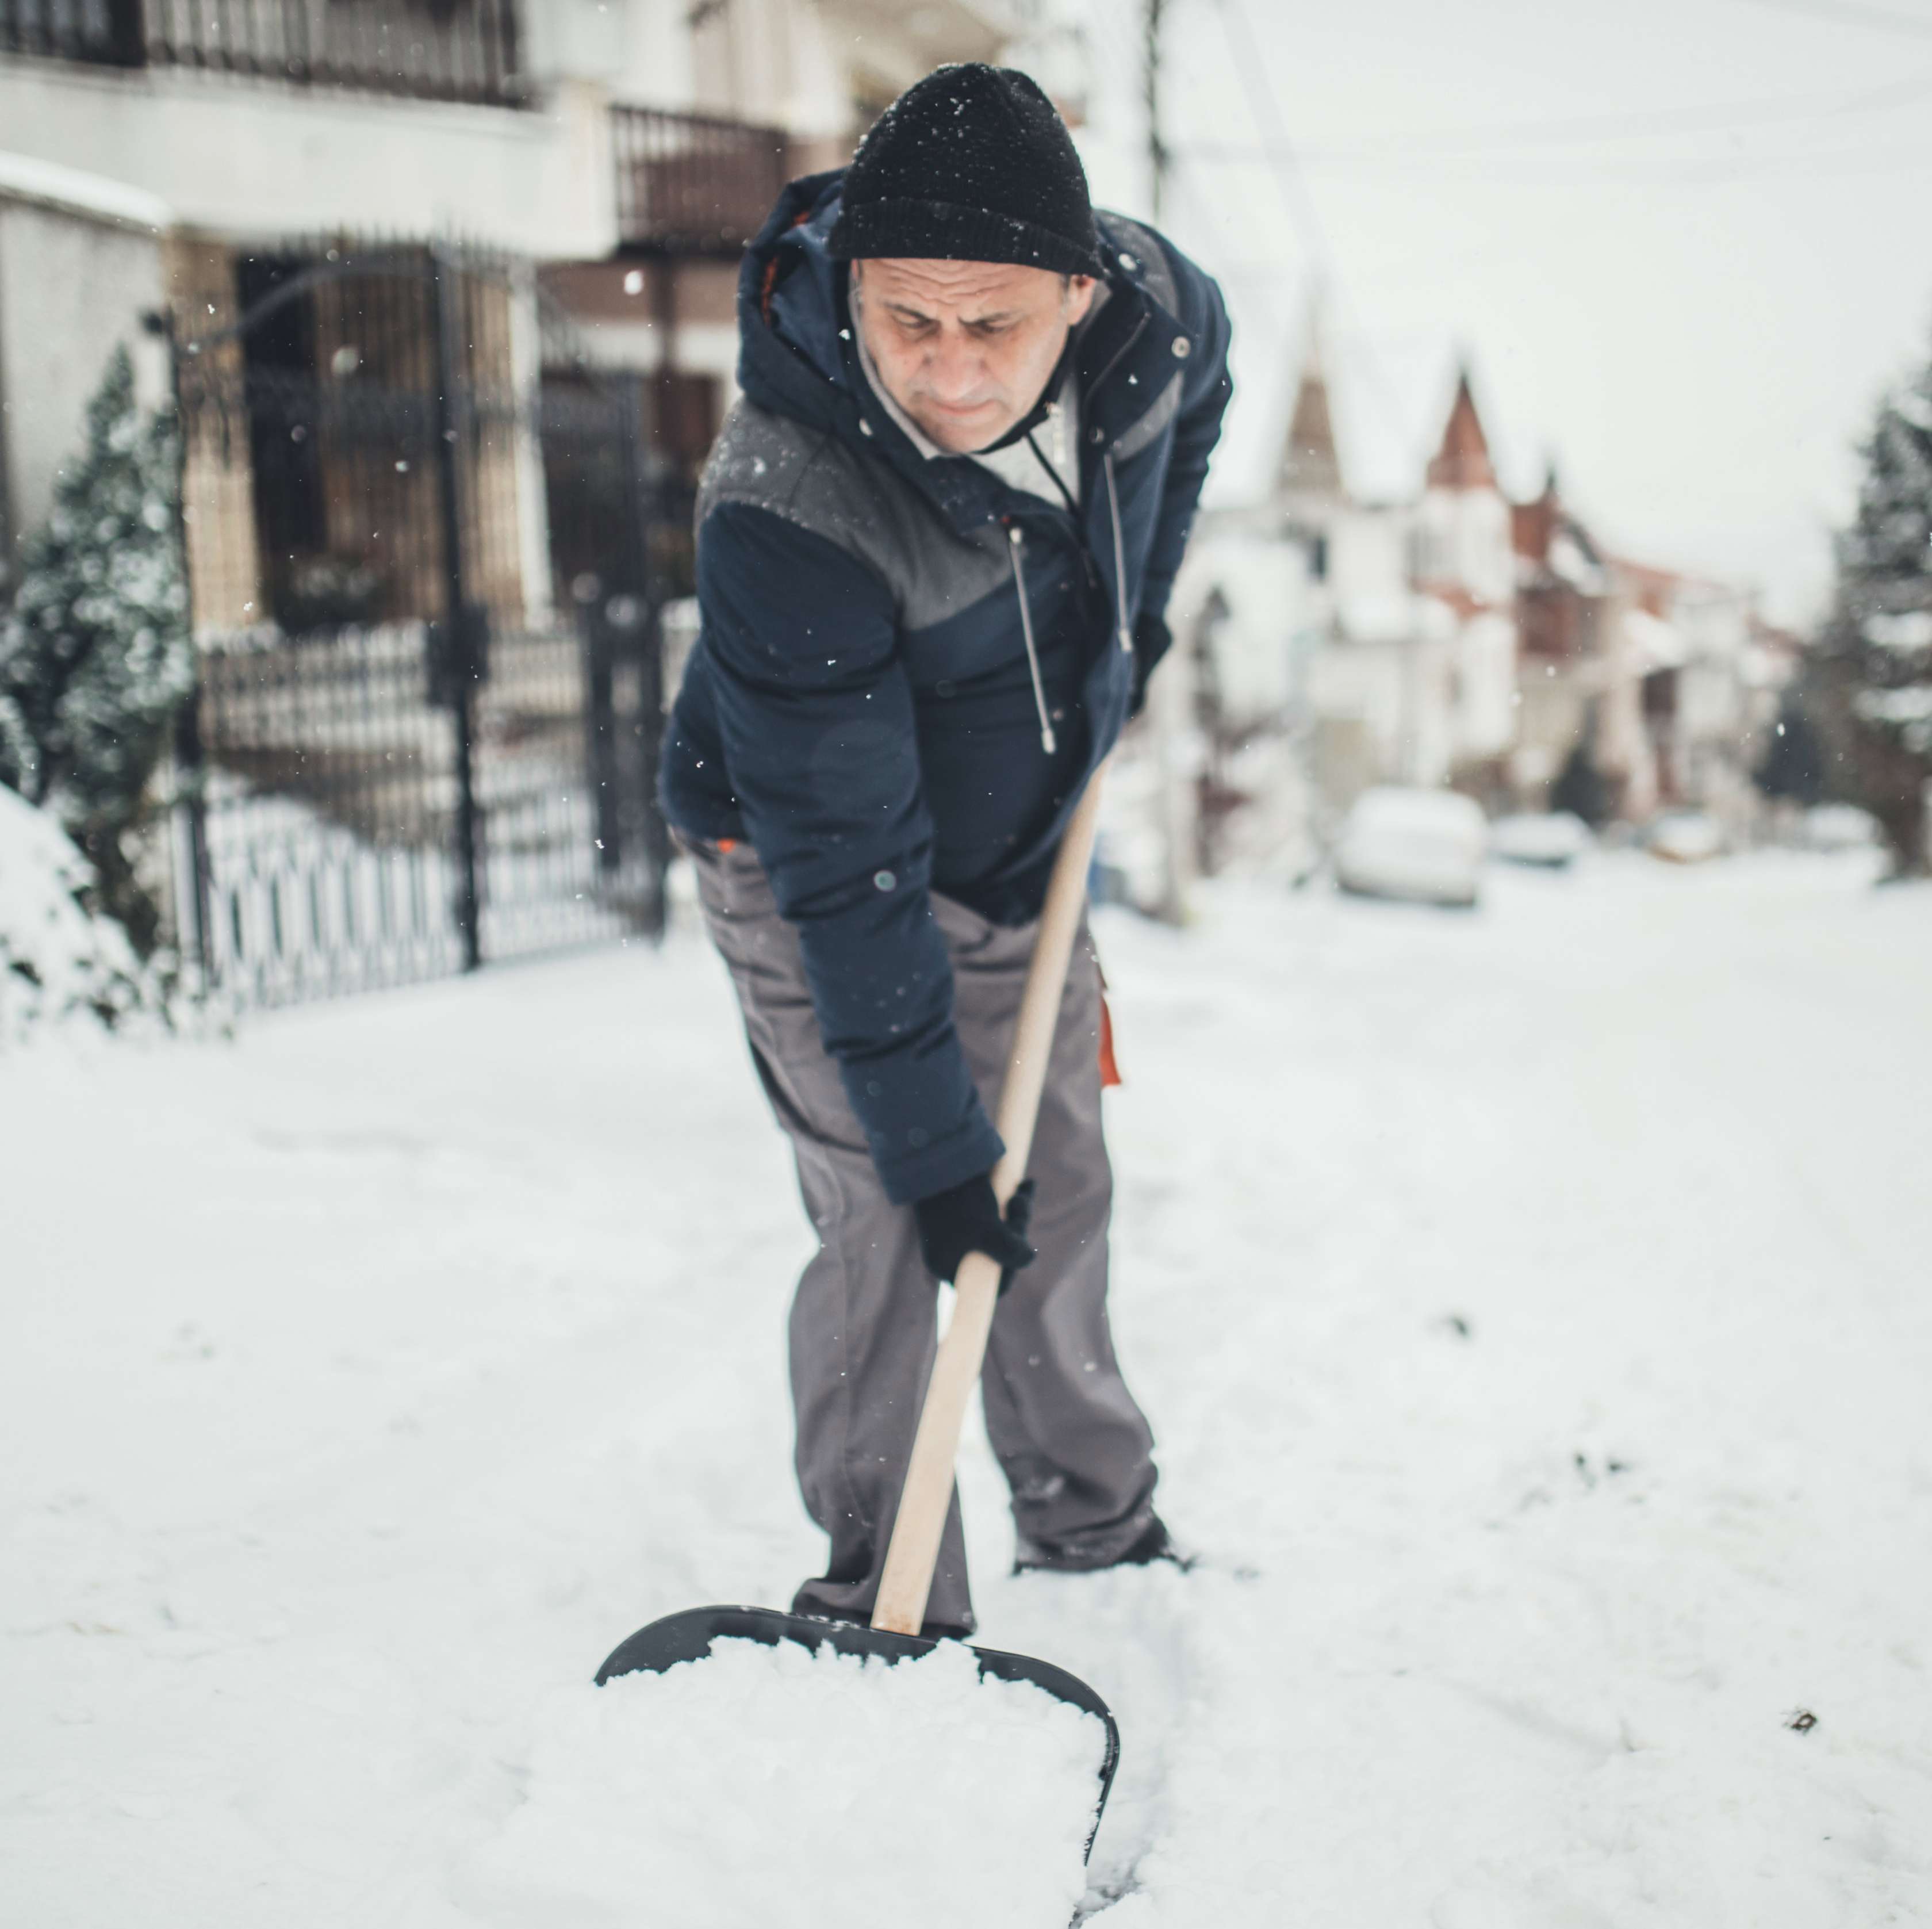 Ein älterer Mann in schwarz-grauer Jacke und Mütze räumt auf einer Winterstraße Schnee